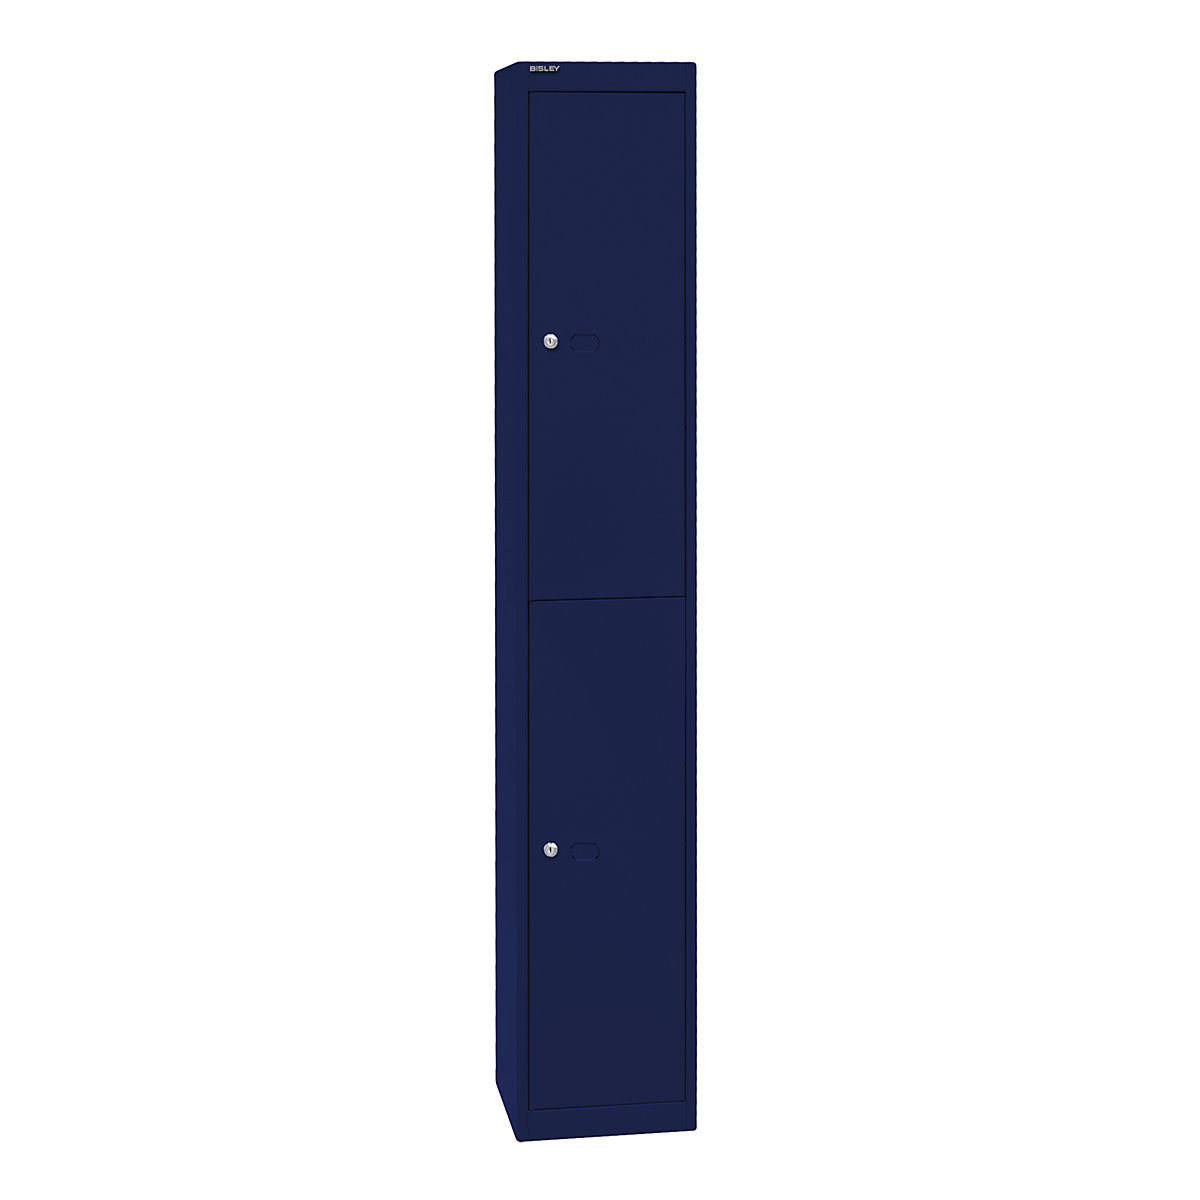 BISLEY OFFICE Garderobensystem, Tiefe 305 mm, 2 Fächer mit je 1 Kleiderhaken, oxfordblau